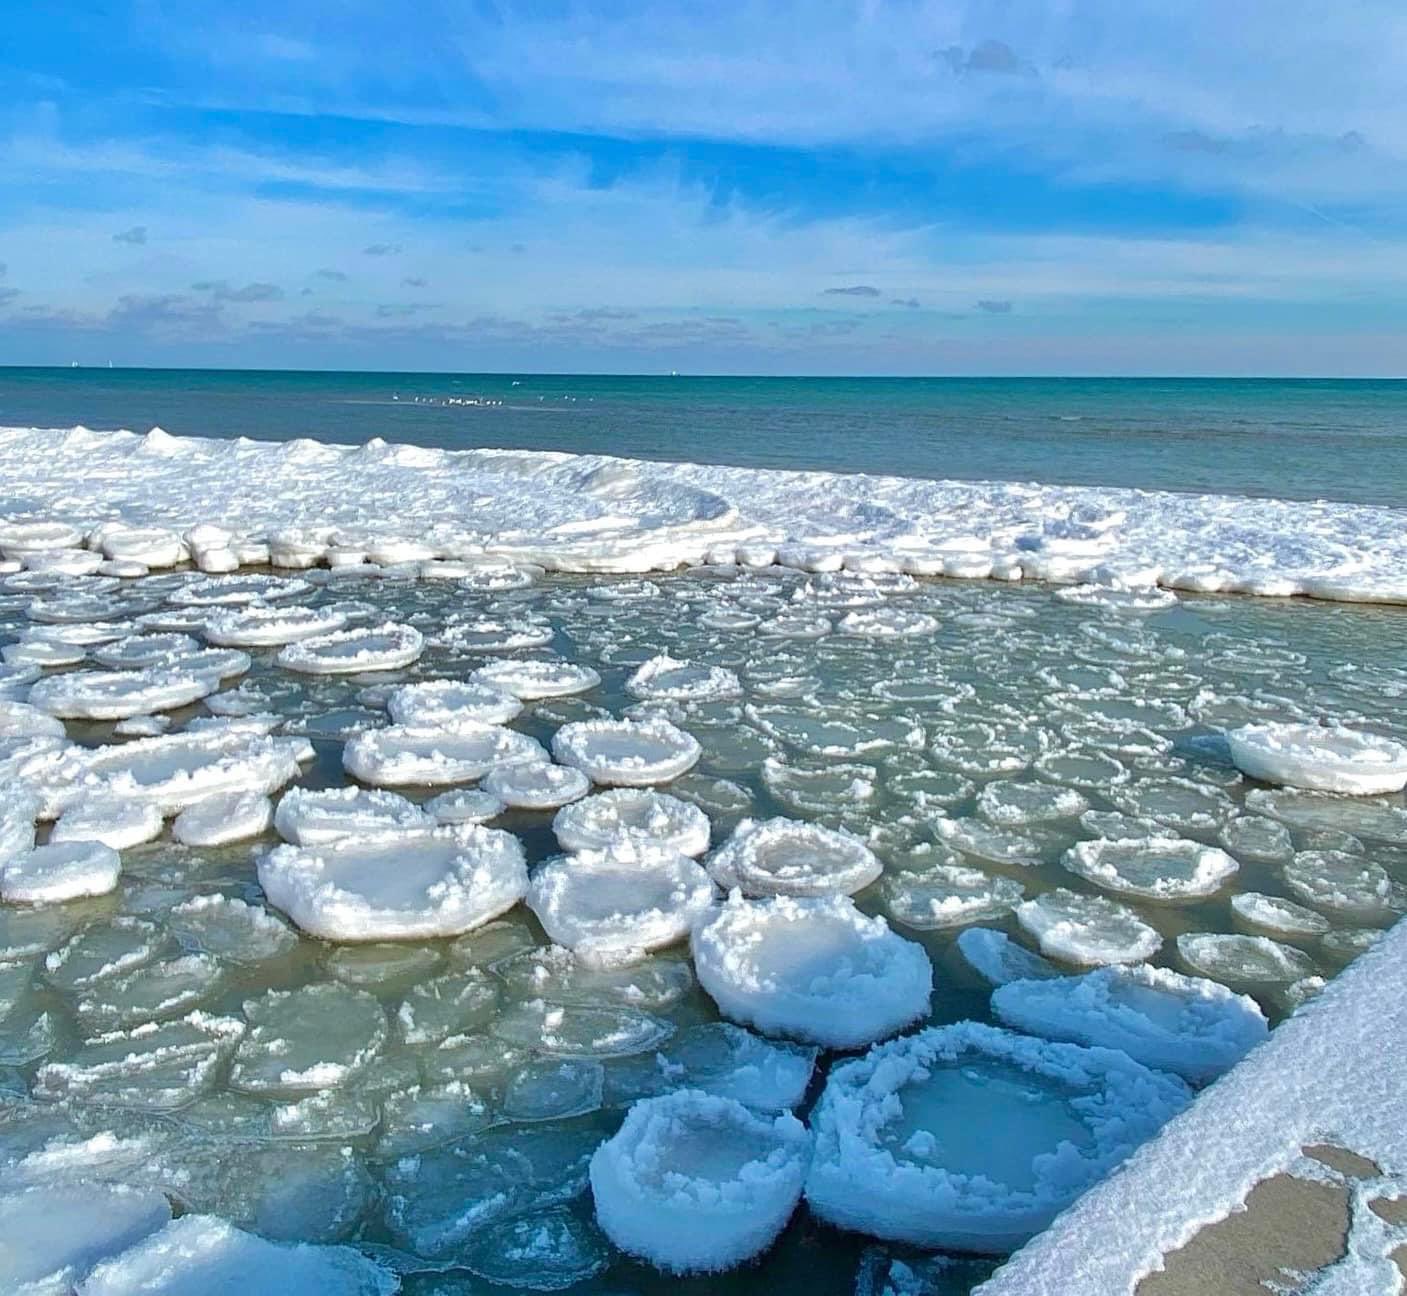 Des pancakes de glace photographiés sur les côtes du lac Huron, au Michigan (États-Unis). © Discover The Blue Michigan’s Thumbcoast